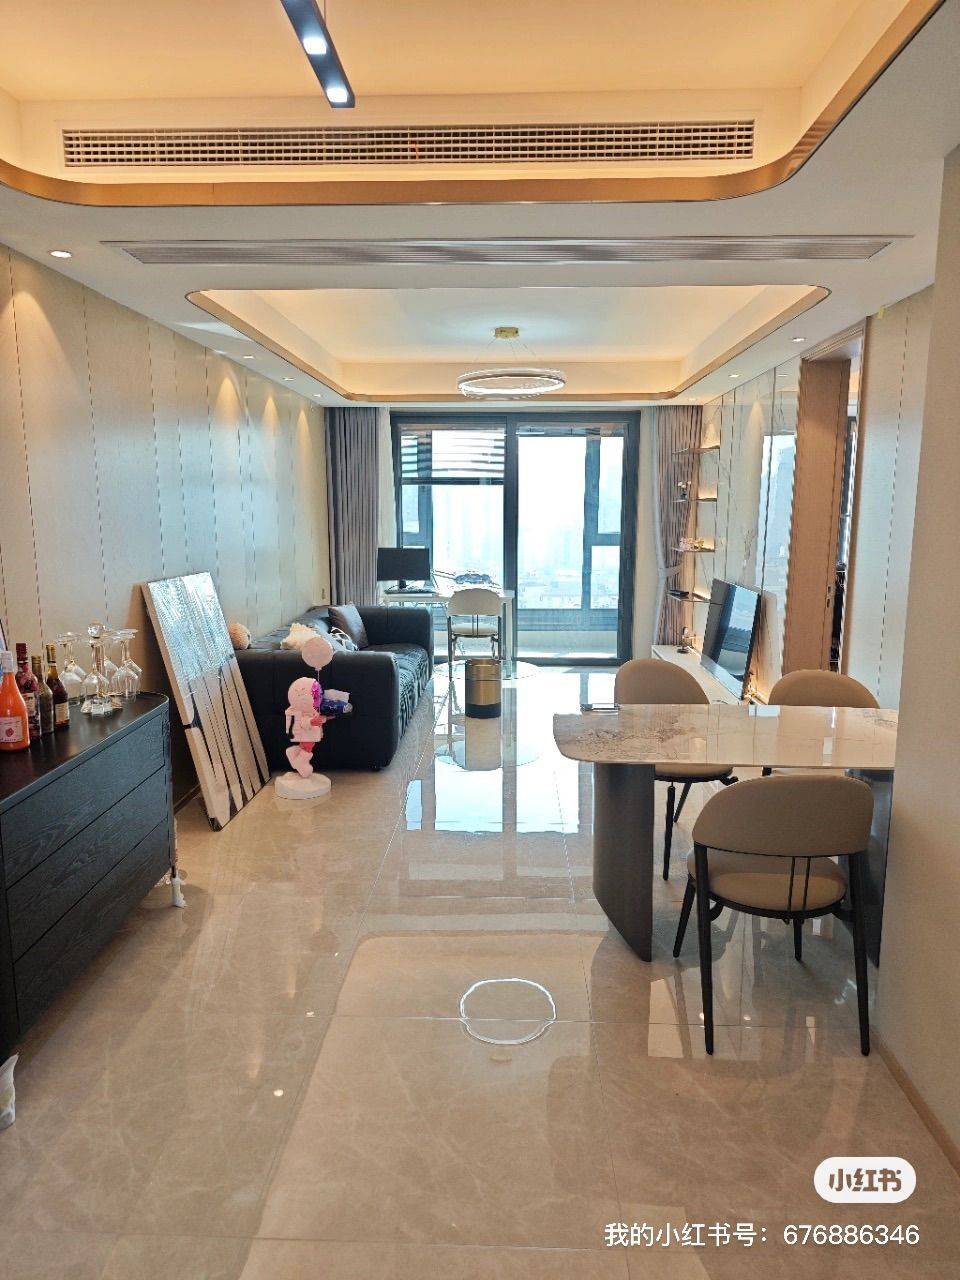 上海-虹口-Line 4&10,whole apartment,Shared apartment